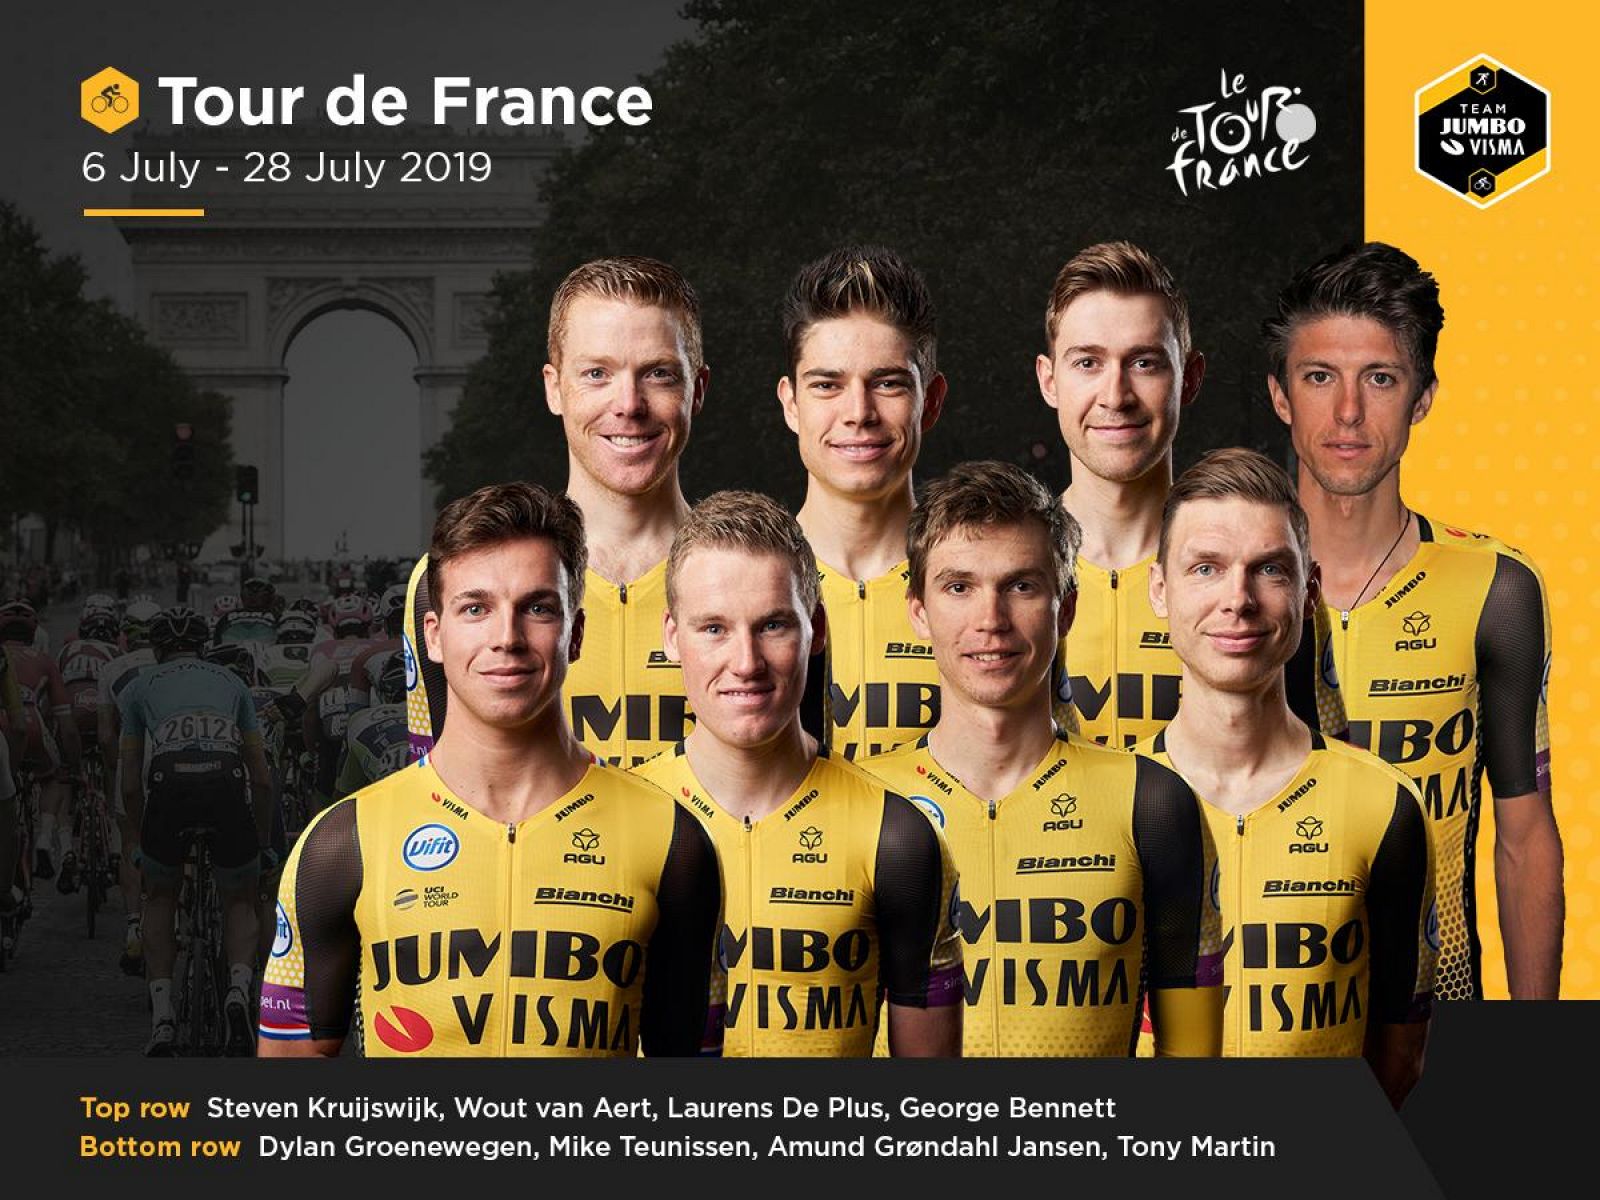 Imagen publicada por el equipo holandés Jumbo Visma con el equiupo elegido para disputar el Tour 2019.